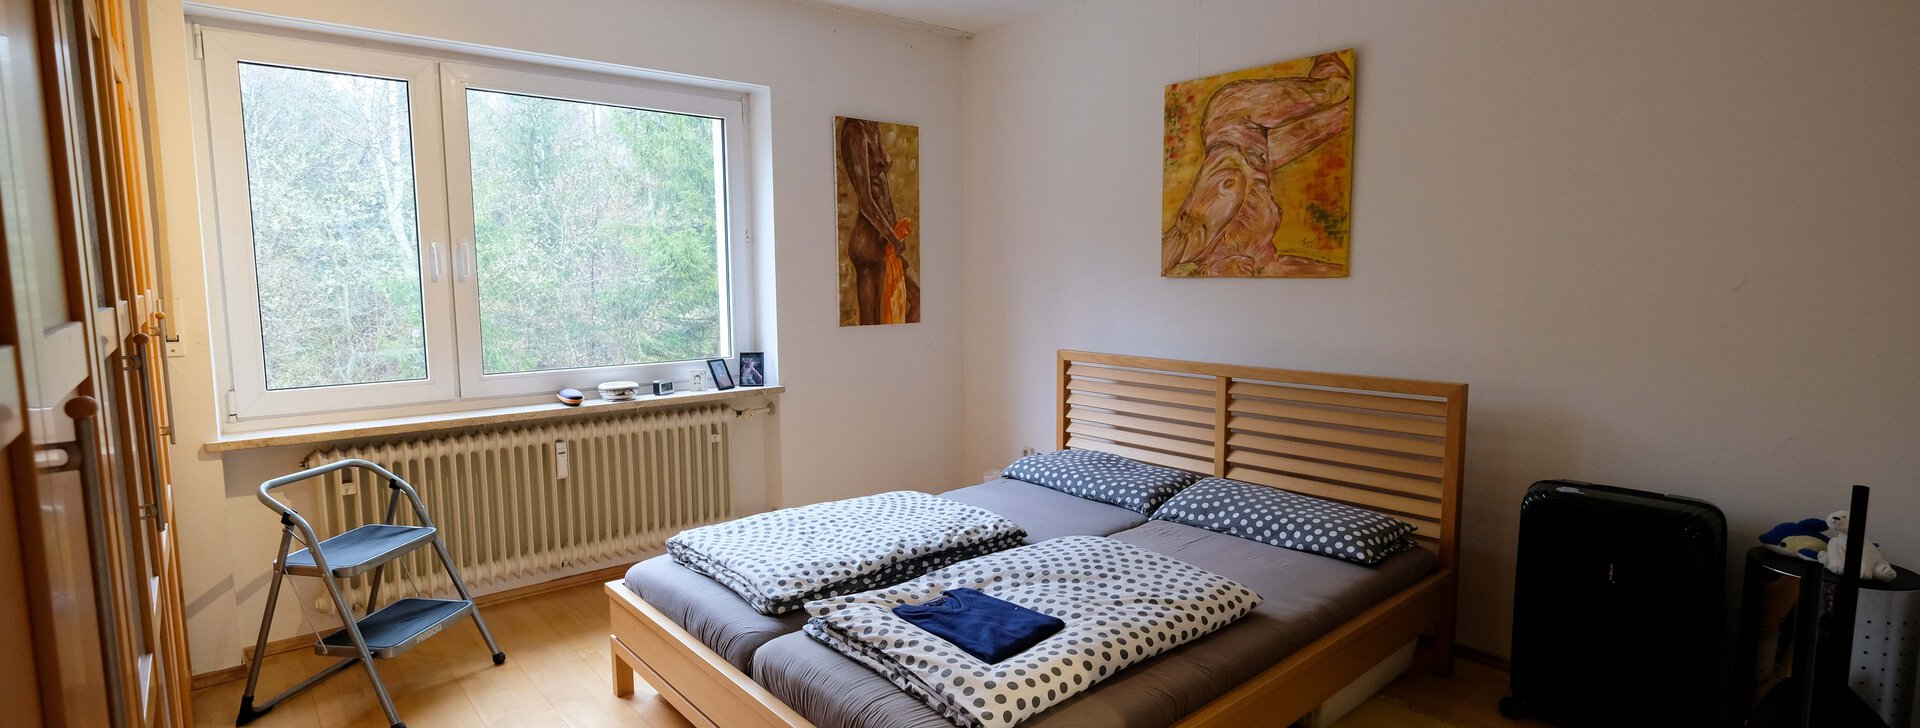 Mietwohnung in bevorzugter Wohnlage | München Trudering | HausBauHaus immobilienmakler | © HausBauHaus GmbH